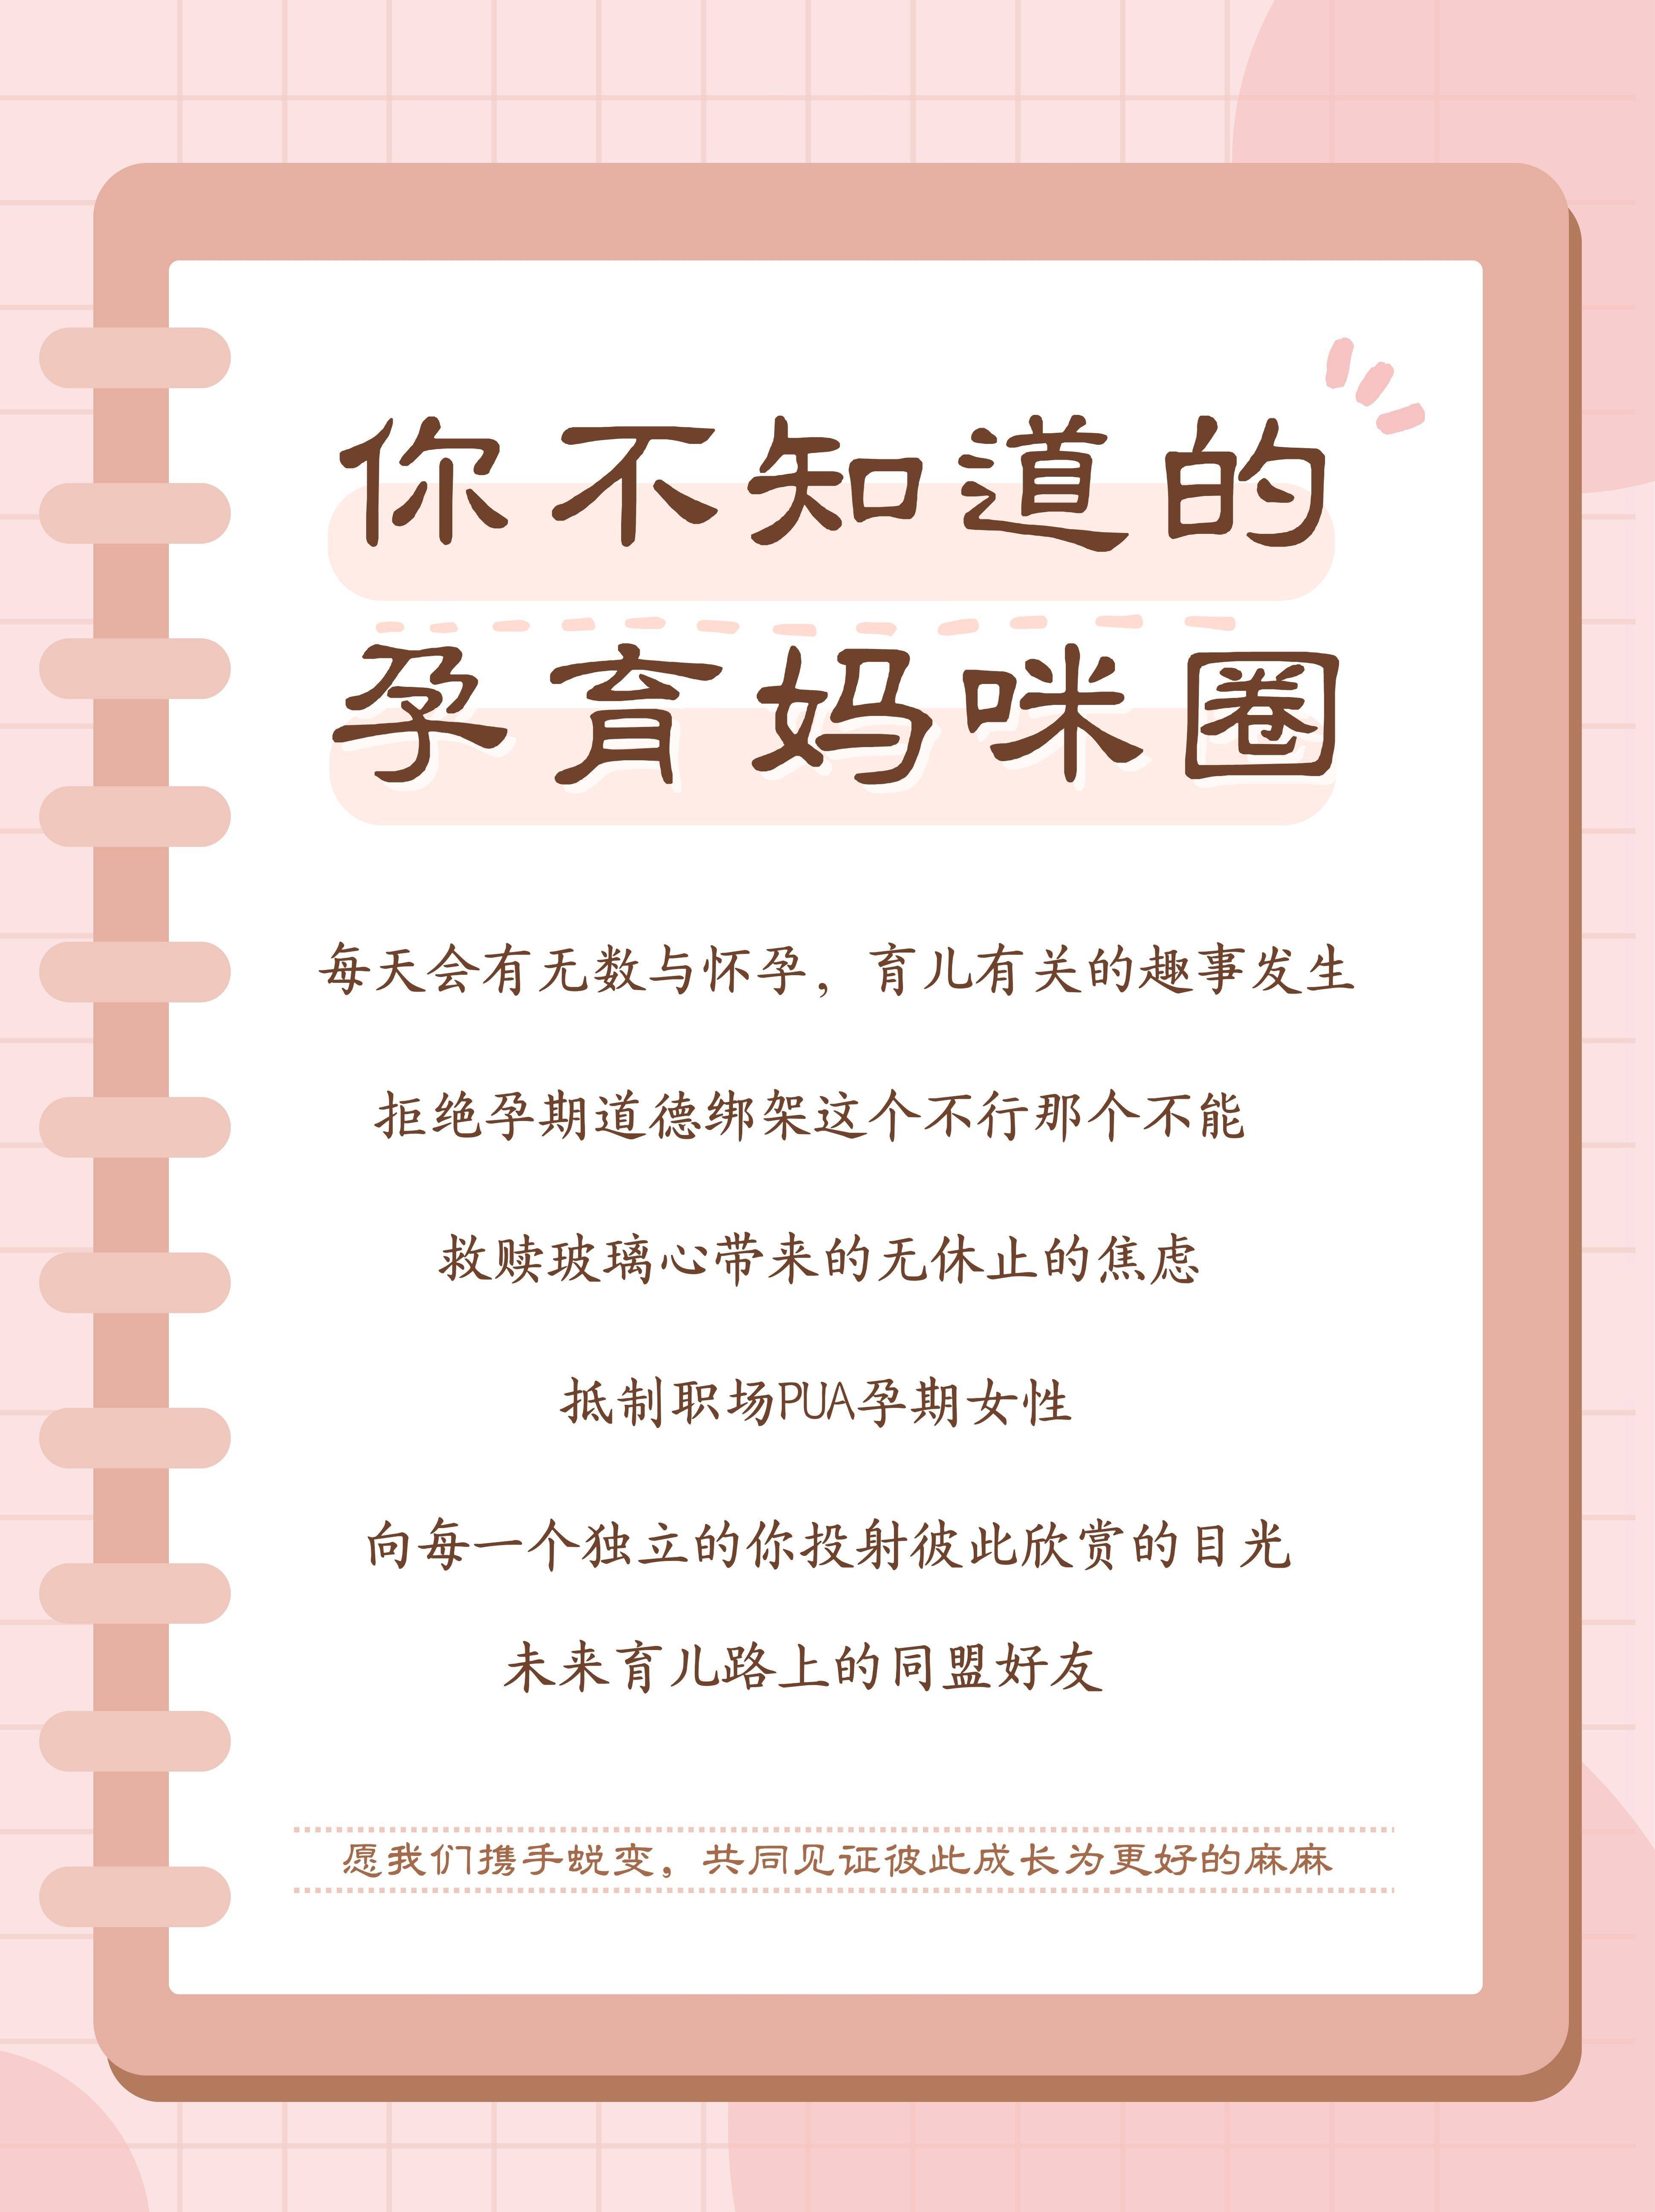 包含北京市海淀医院号贩子挂号电话,欢迎咨询的词条